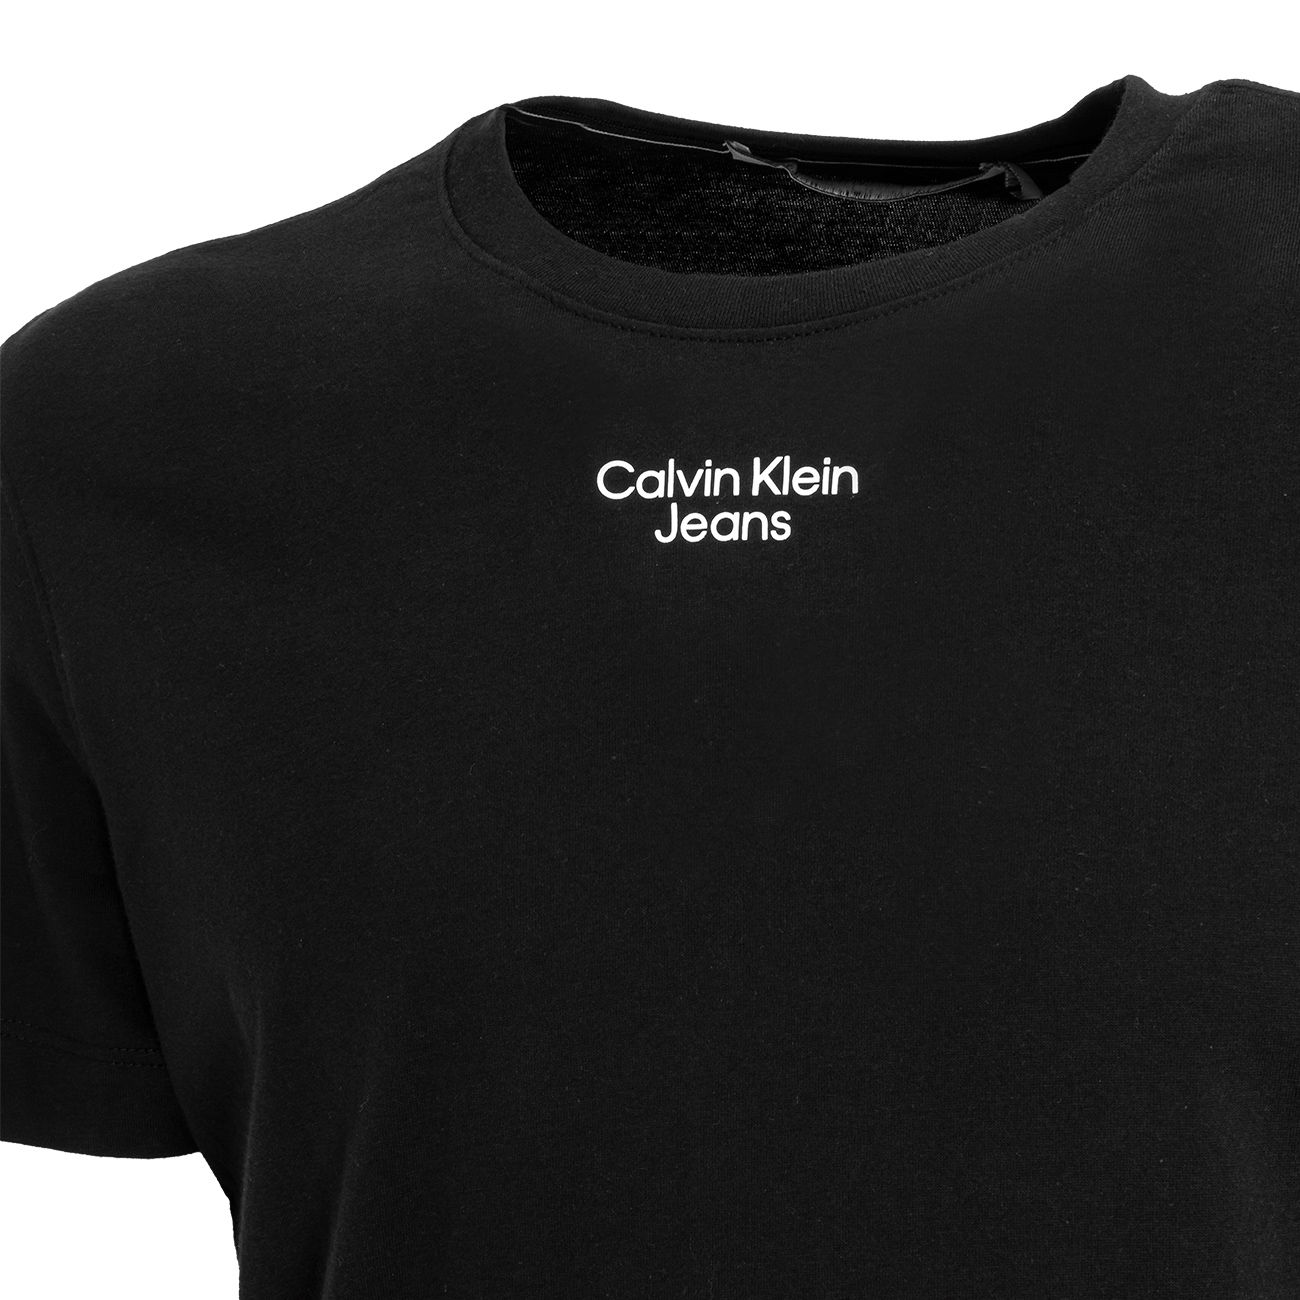 CALVIN KLEIN JEANS STACKED LOGO T-SHIRT Man Beh Black | Mascheroni Store